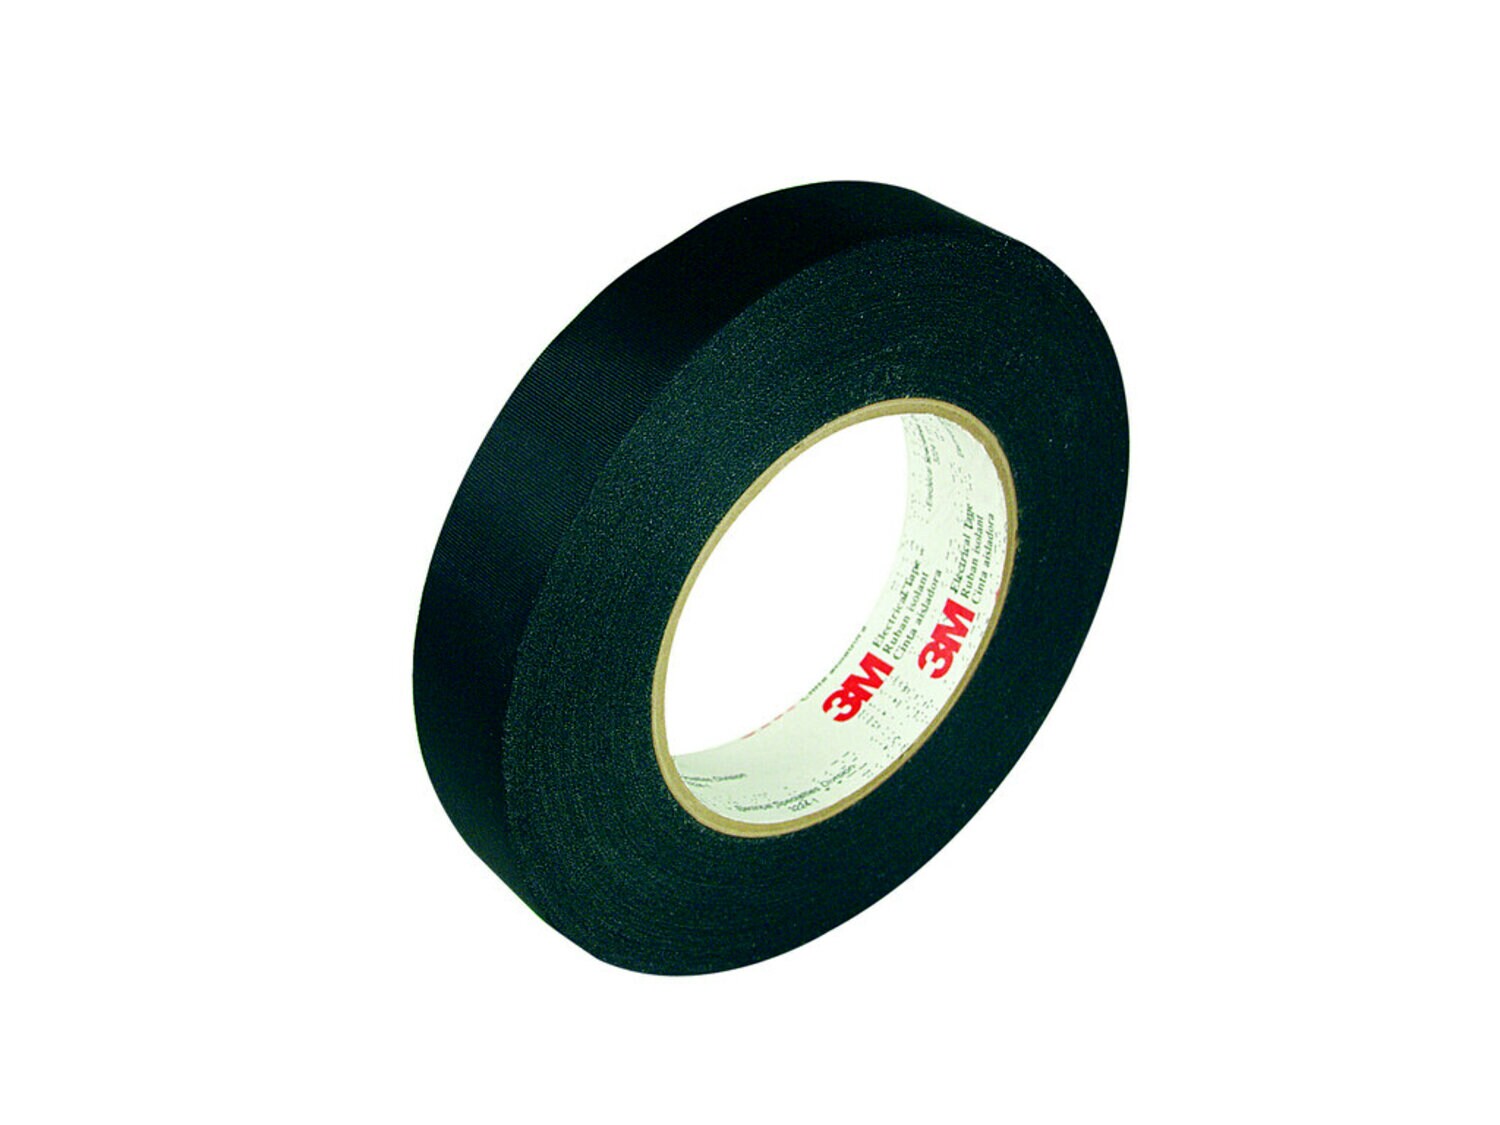 7000132722 - 3M Acetate Cloth Electrical Tape 11, 1 in x 72 yd, 3 in Paper Core, 36
Rolls/Case